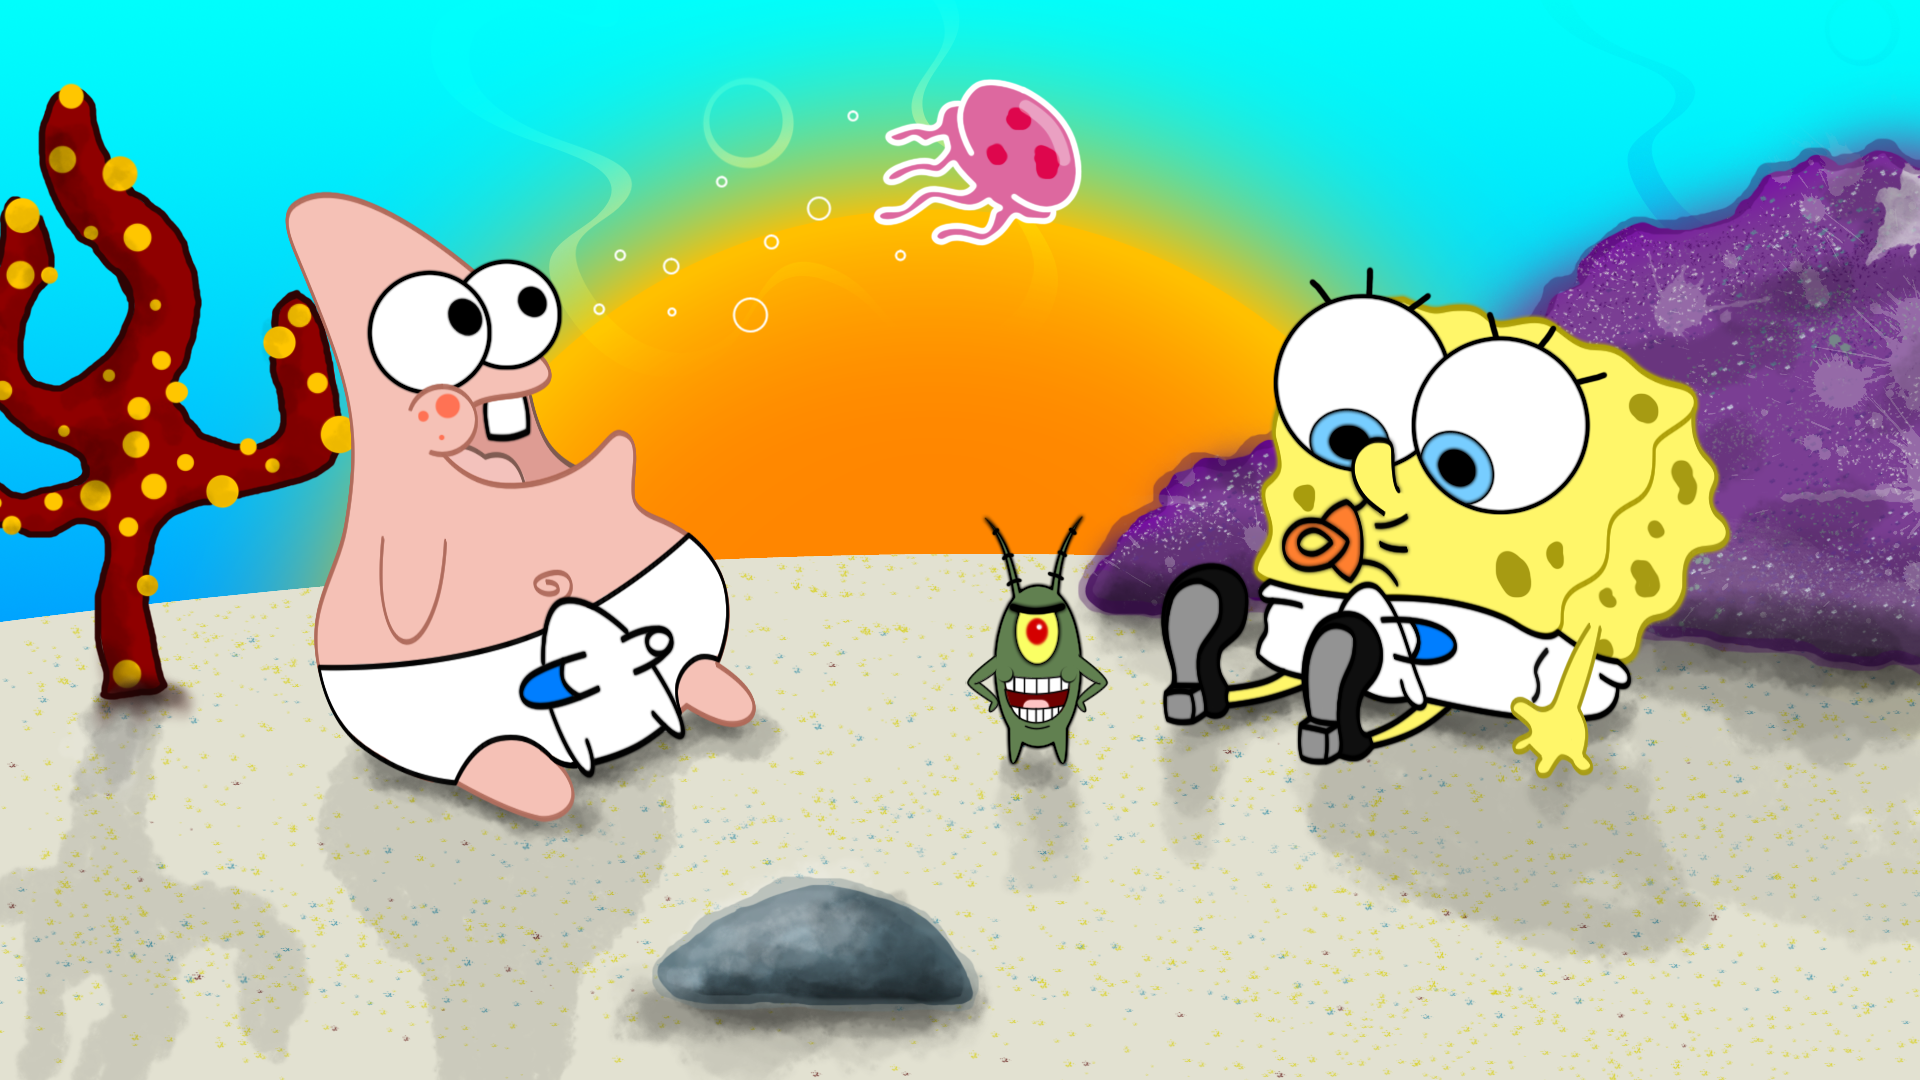 Spongebob And Patrick As Babies Wallpaper. Desain karakter, Desain